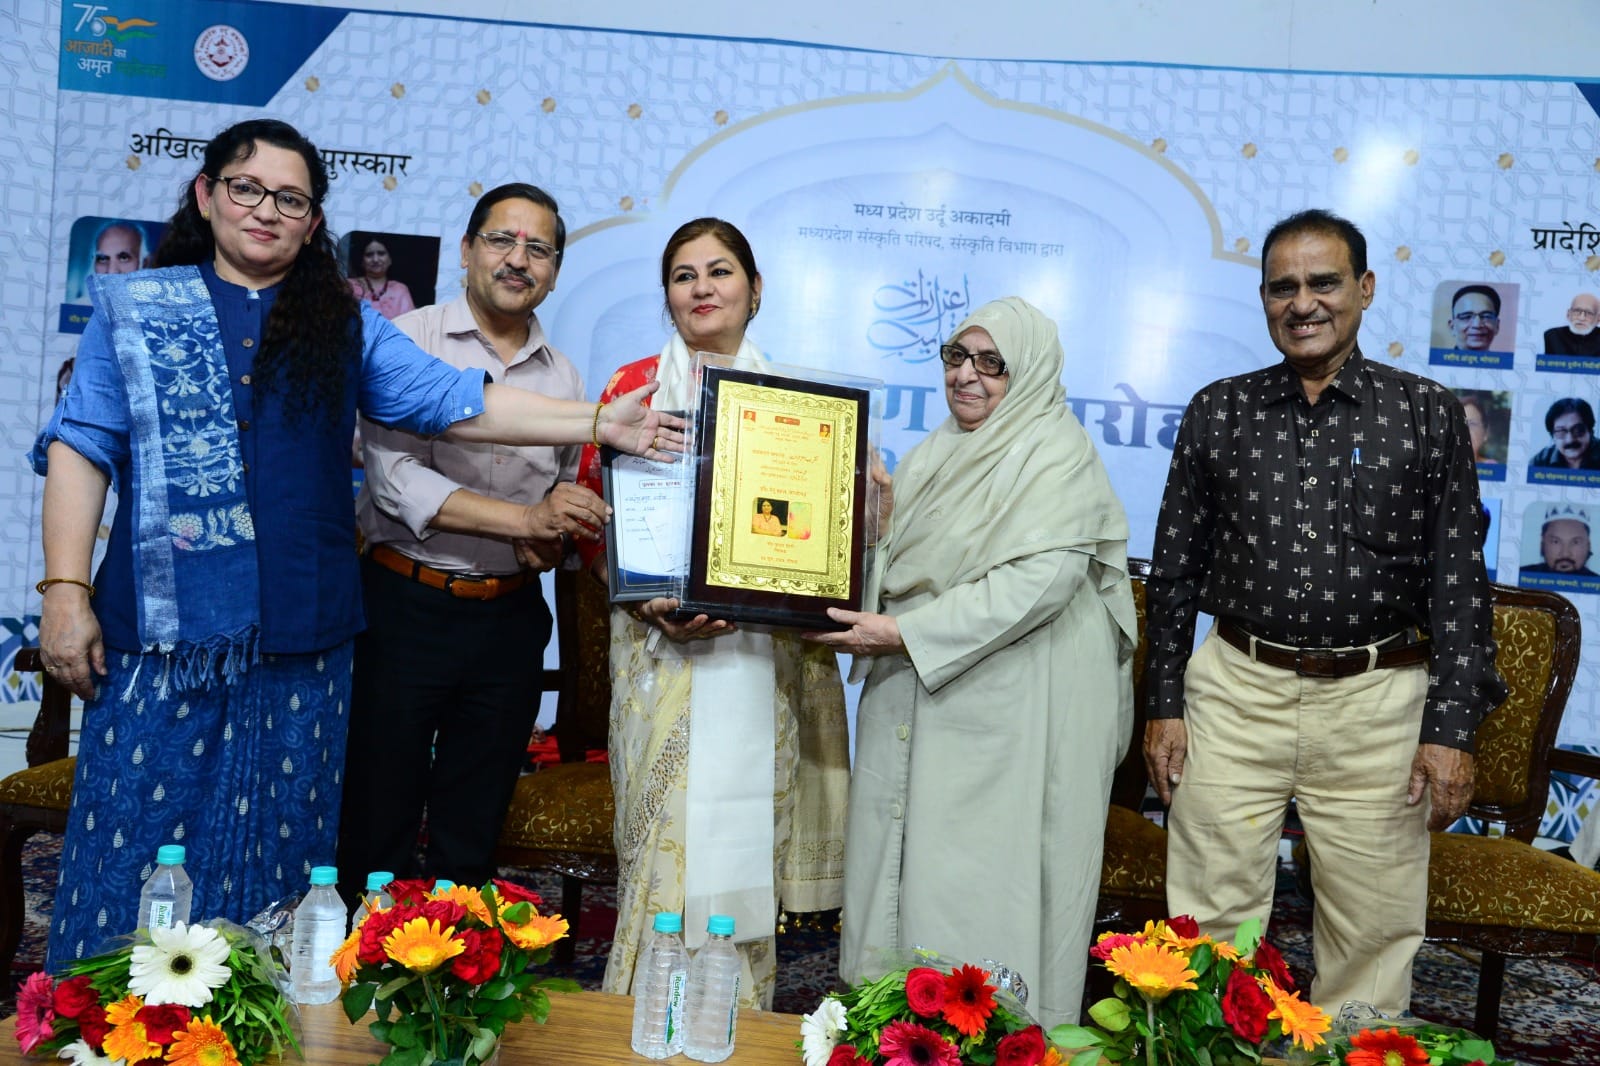 معروف فکشن نگار محترمہ رخشندہ روحی مہدی حامد سعید خاں کل ہند ایوارڈ سے سرفراز  